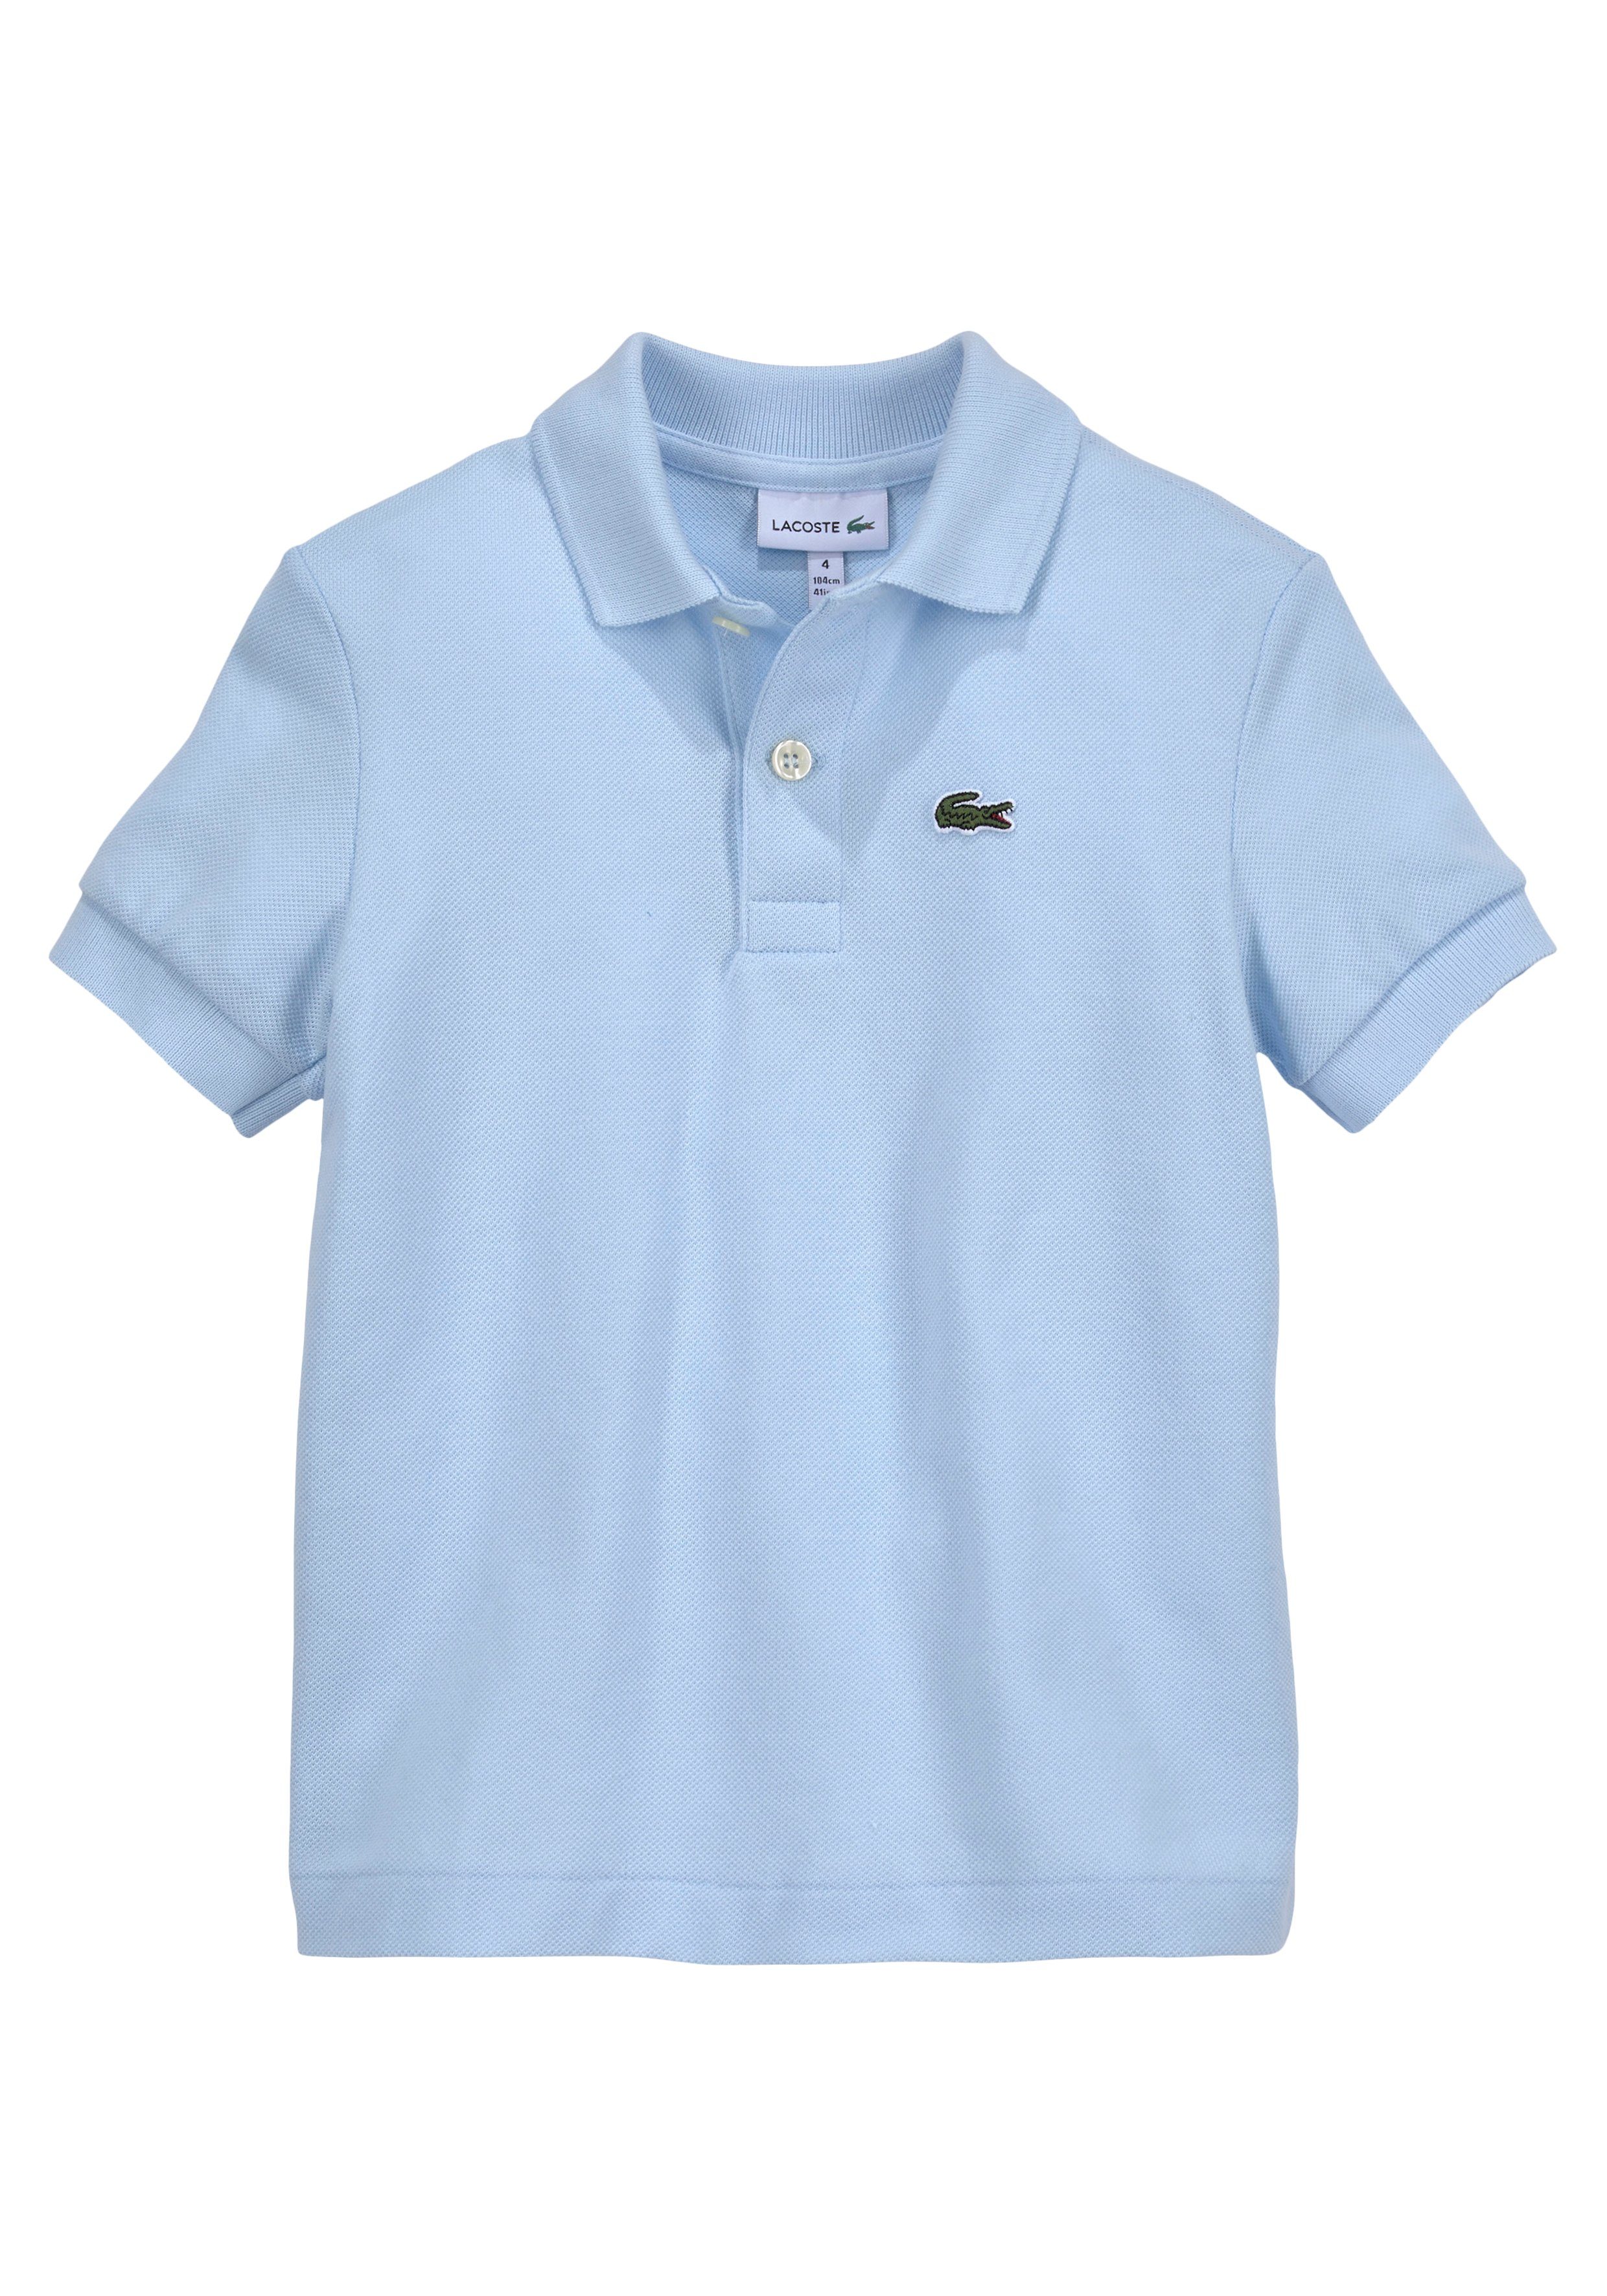 Lacoste Poloshirt mit Kinder MiniMe,Junior, hellblau aufgesticktem Kids Junior Kroko Kids Polo